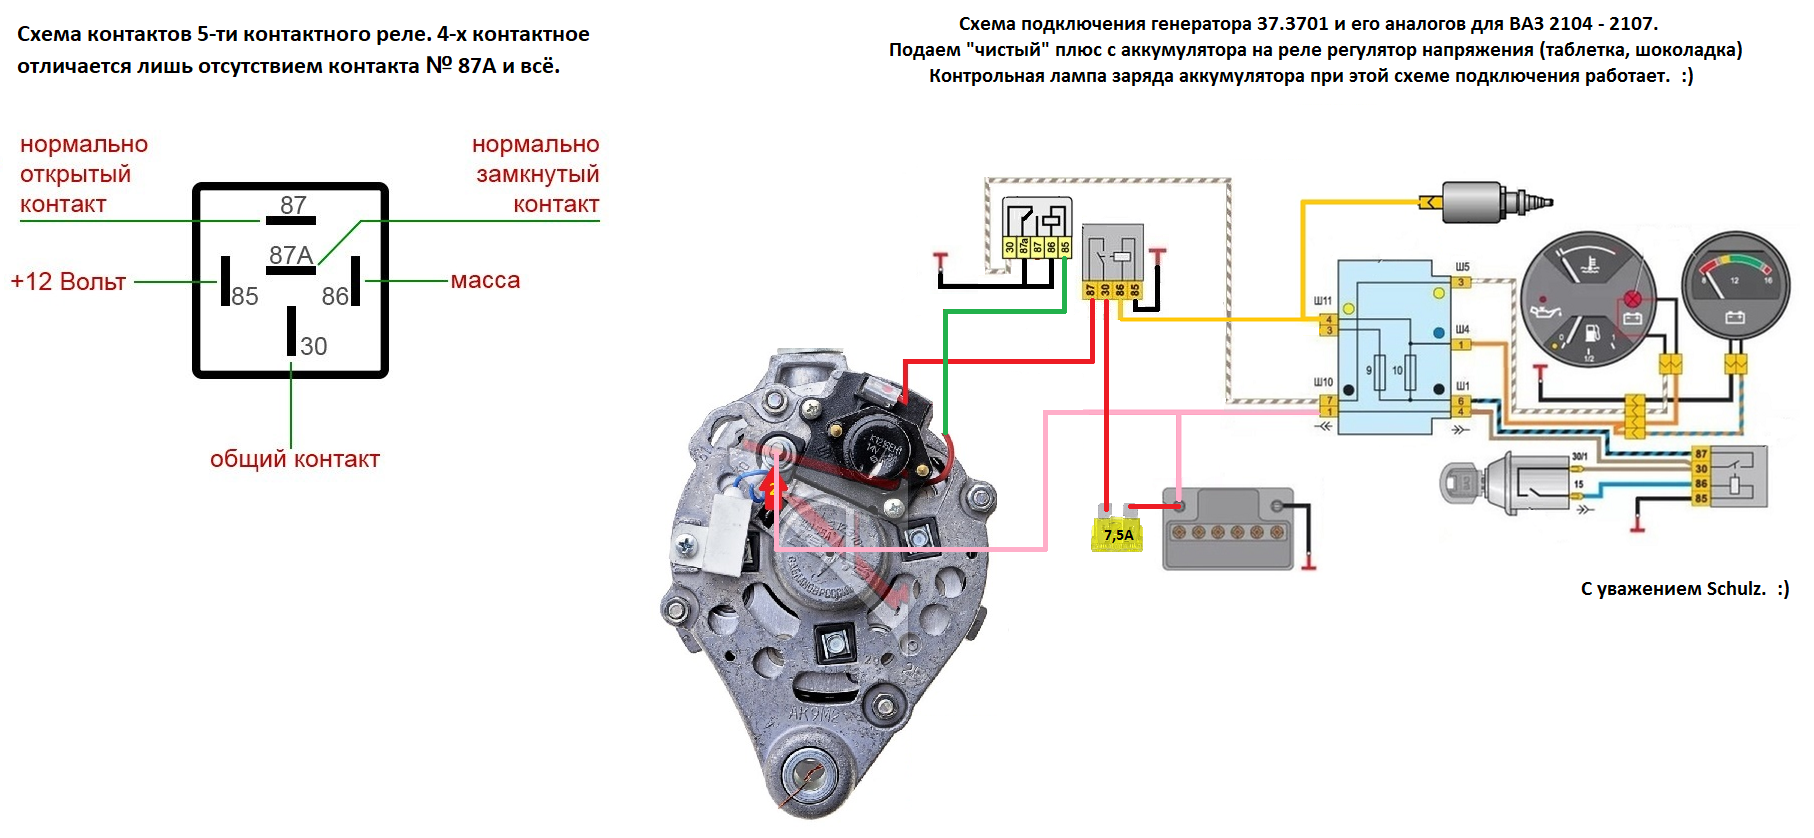 Как правильно подключить генератор камаз: подробная схема и инструкция